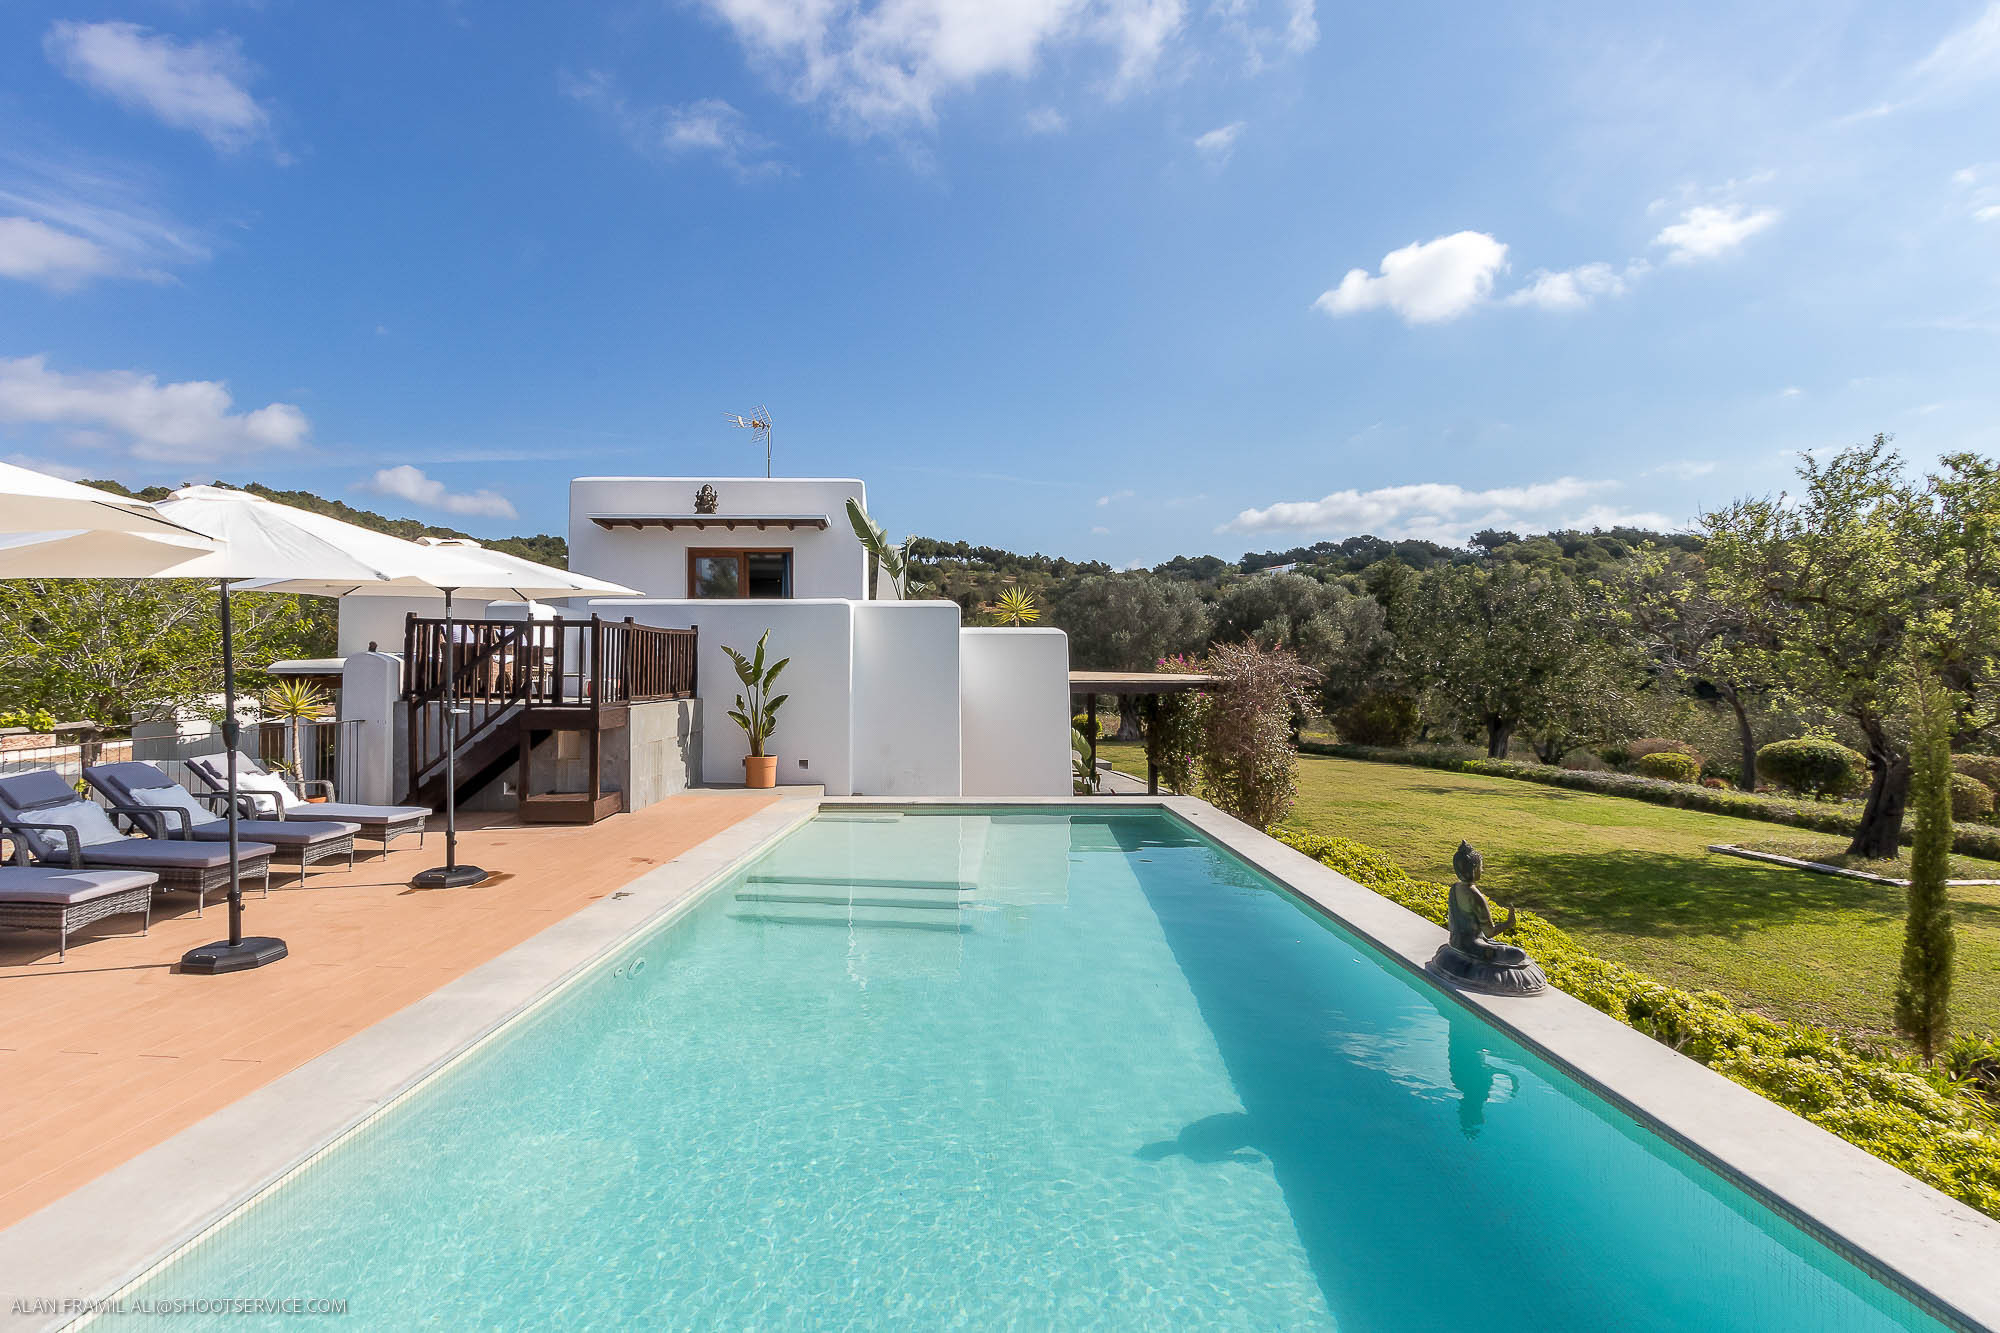 Blick auf den Garten und den Pool der Villa Agroturismo in Santa Eulalia, Ibiza